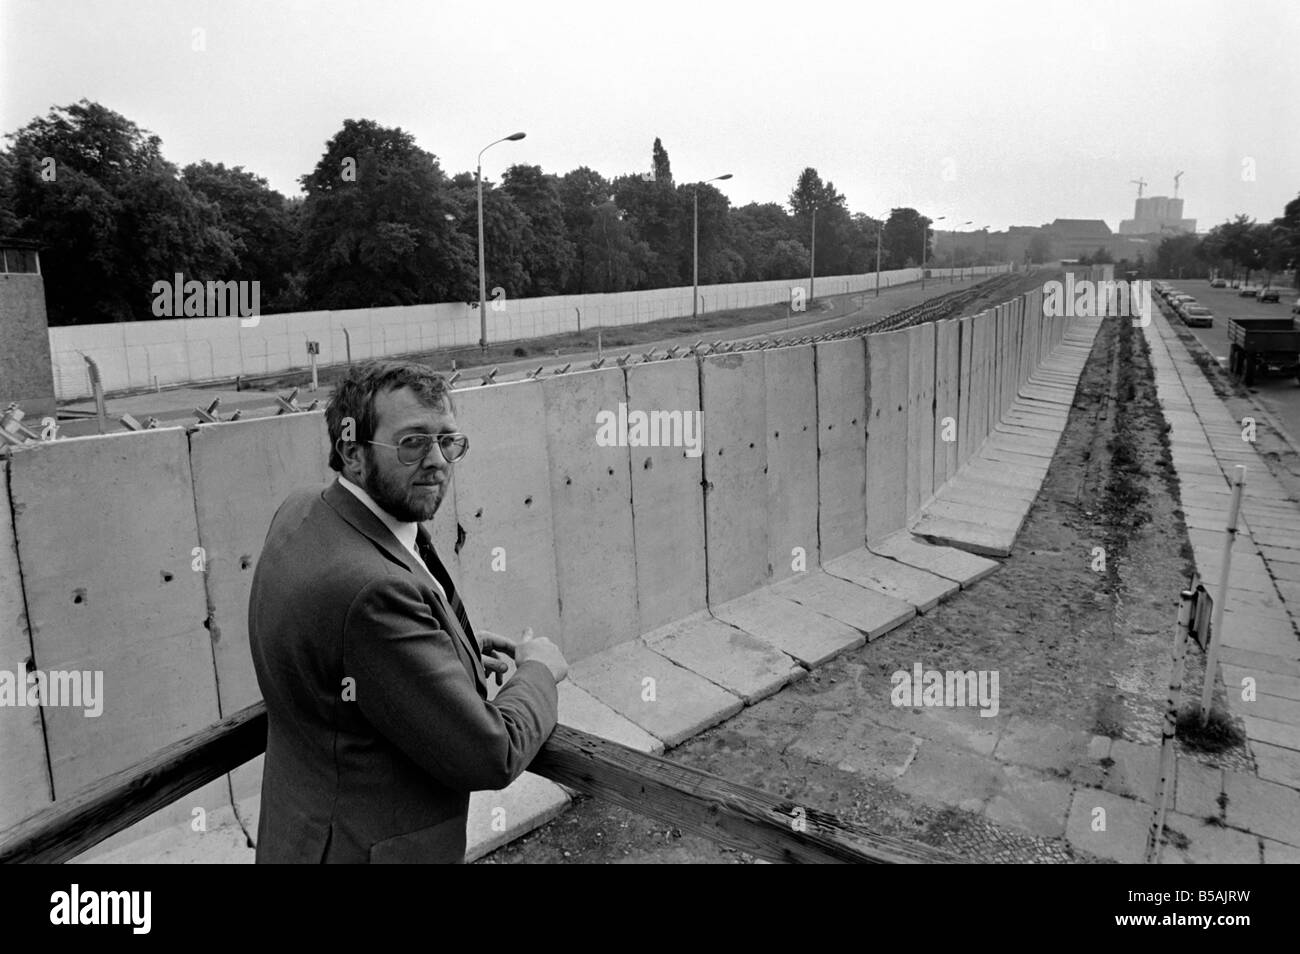 Blick auf die Berliner Mauer am Brandenburger Tor.; Die Berliner Mauer war eine Barriere trennt West-Berlin aus Ost-Berlin und dem Rest der DDR. Juni 1980 Stockfoto